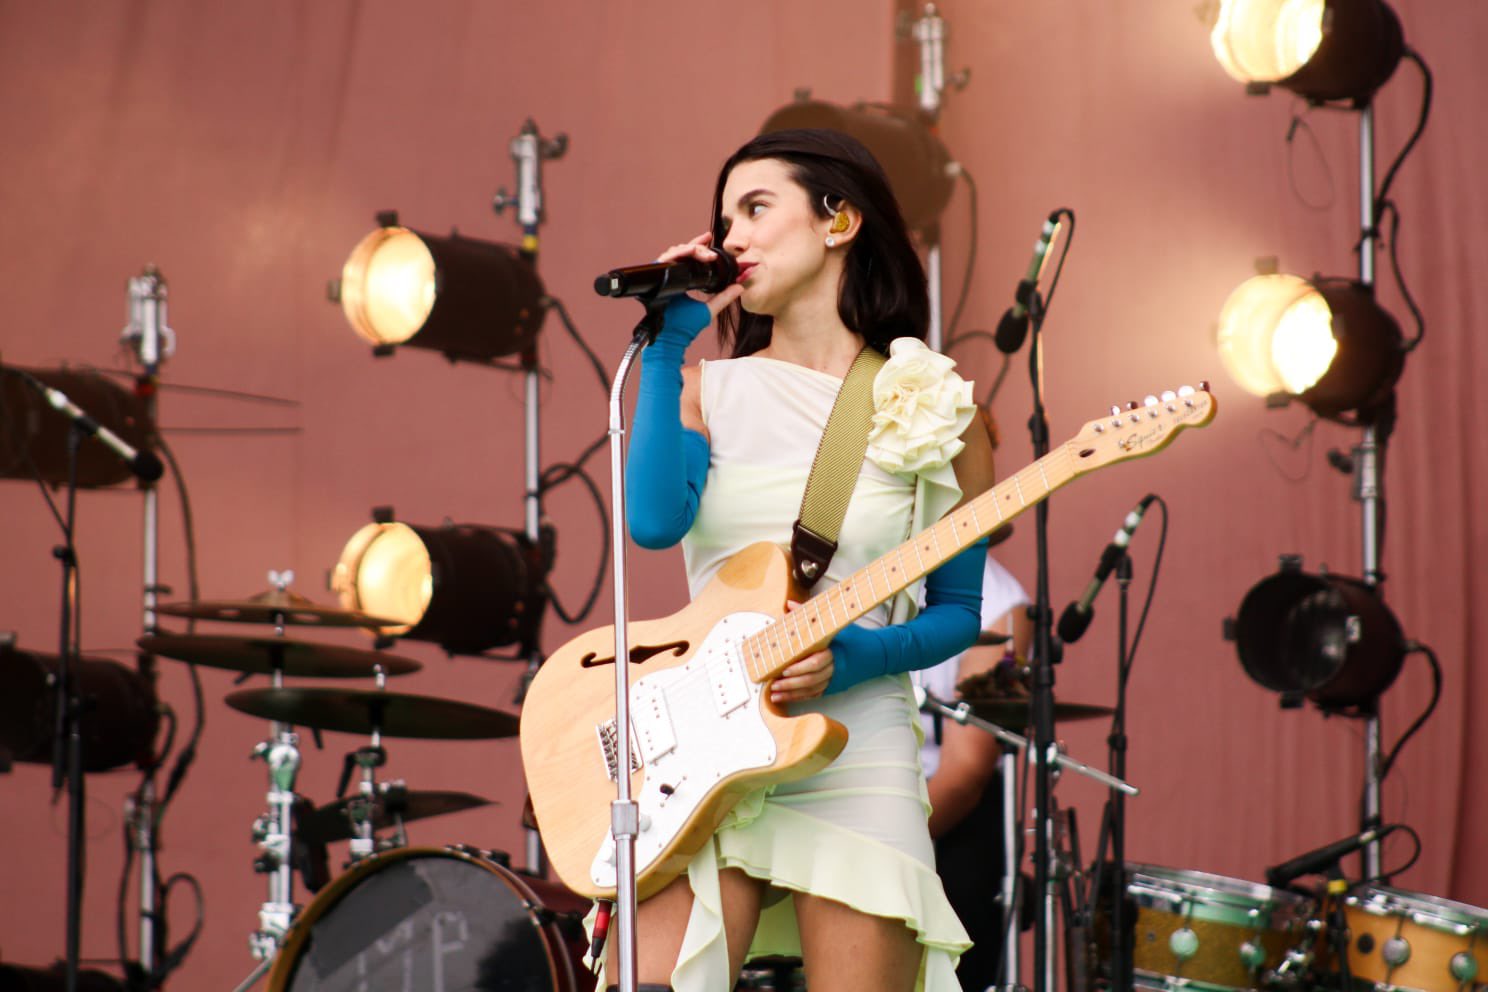 Em primeiro plano Manu Gavassi com uma guitarra laranja claro na mão vestindo um vestido curto branco e luvas azuis. No fundo da imagem há uma bateria, vários holofotes de cor amarelada e uma parede rosa.